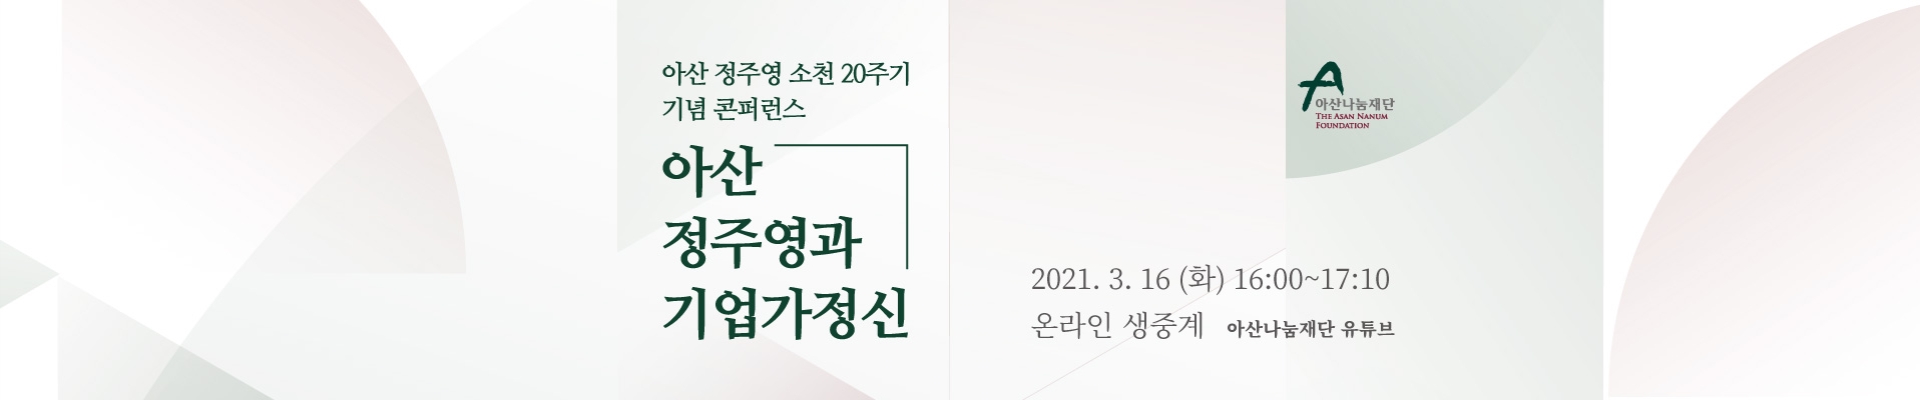 [아산나눔재단] 아산 소천 20주기 콘퍼런스 <아산 정주영과 기업가정신>